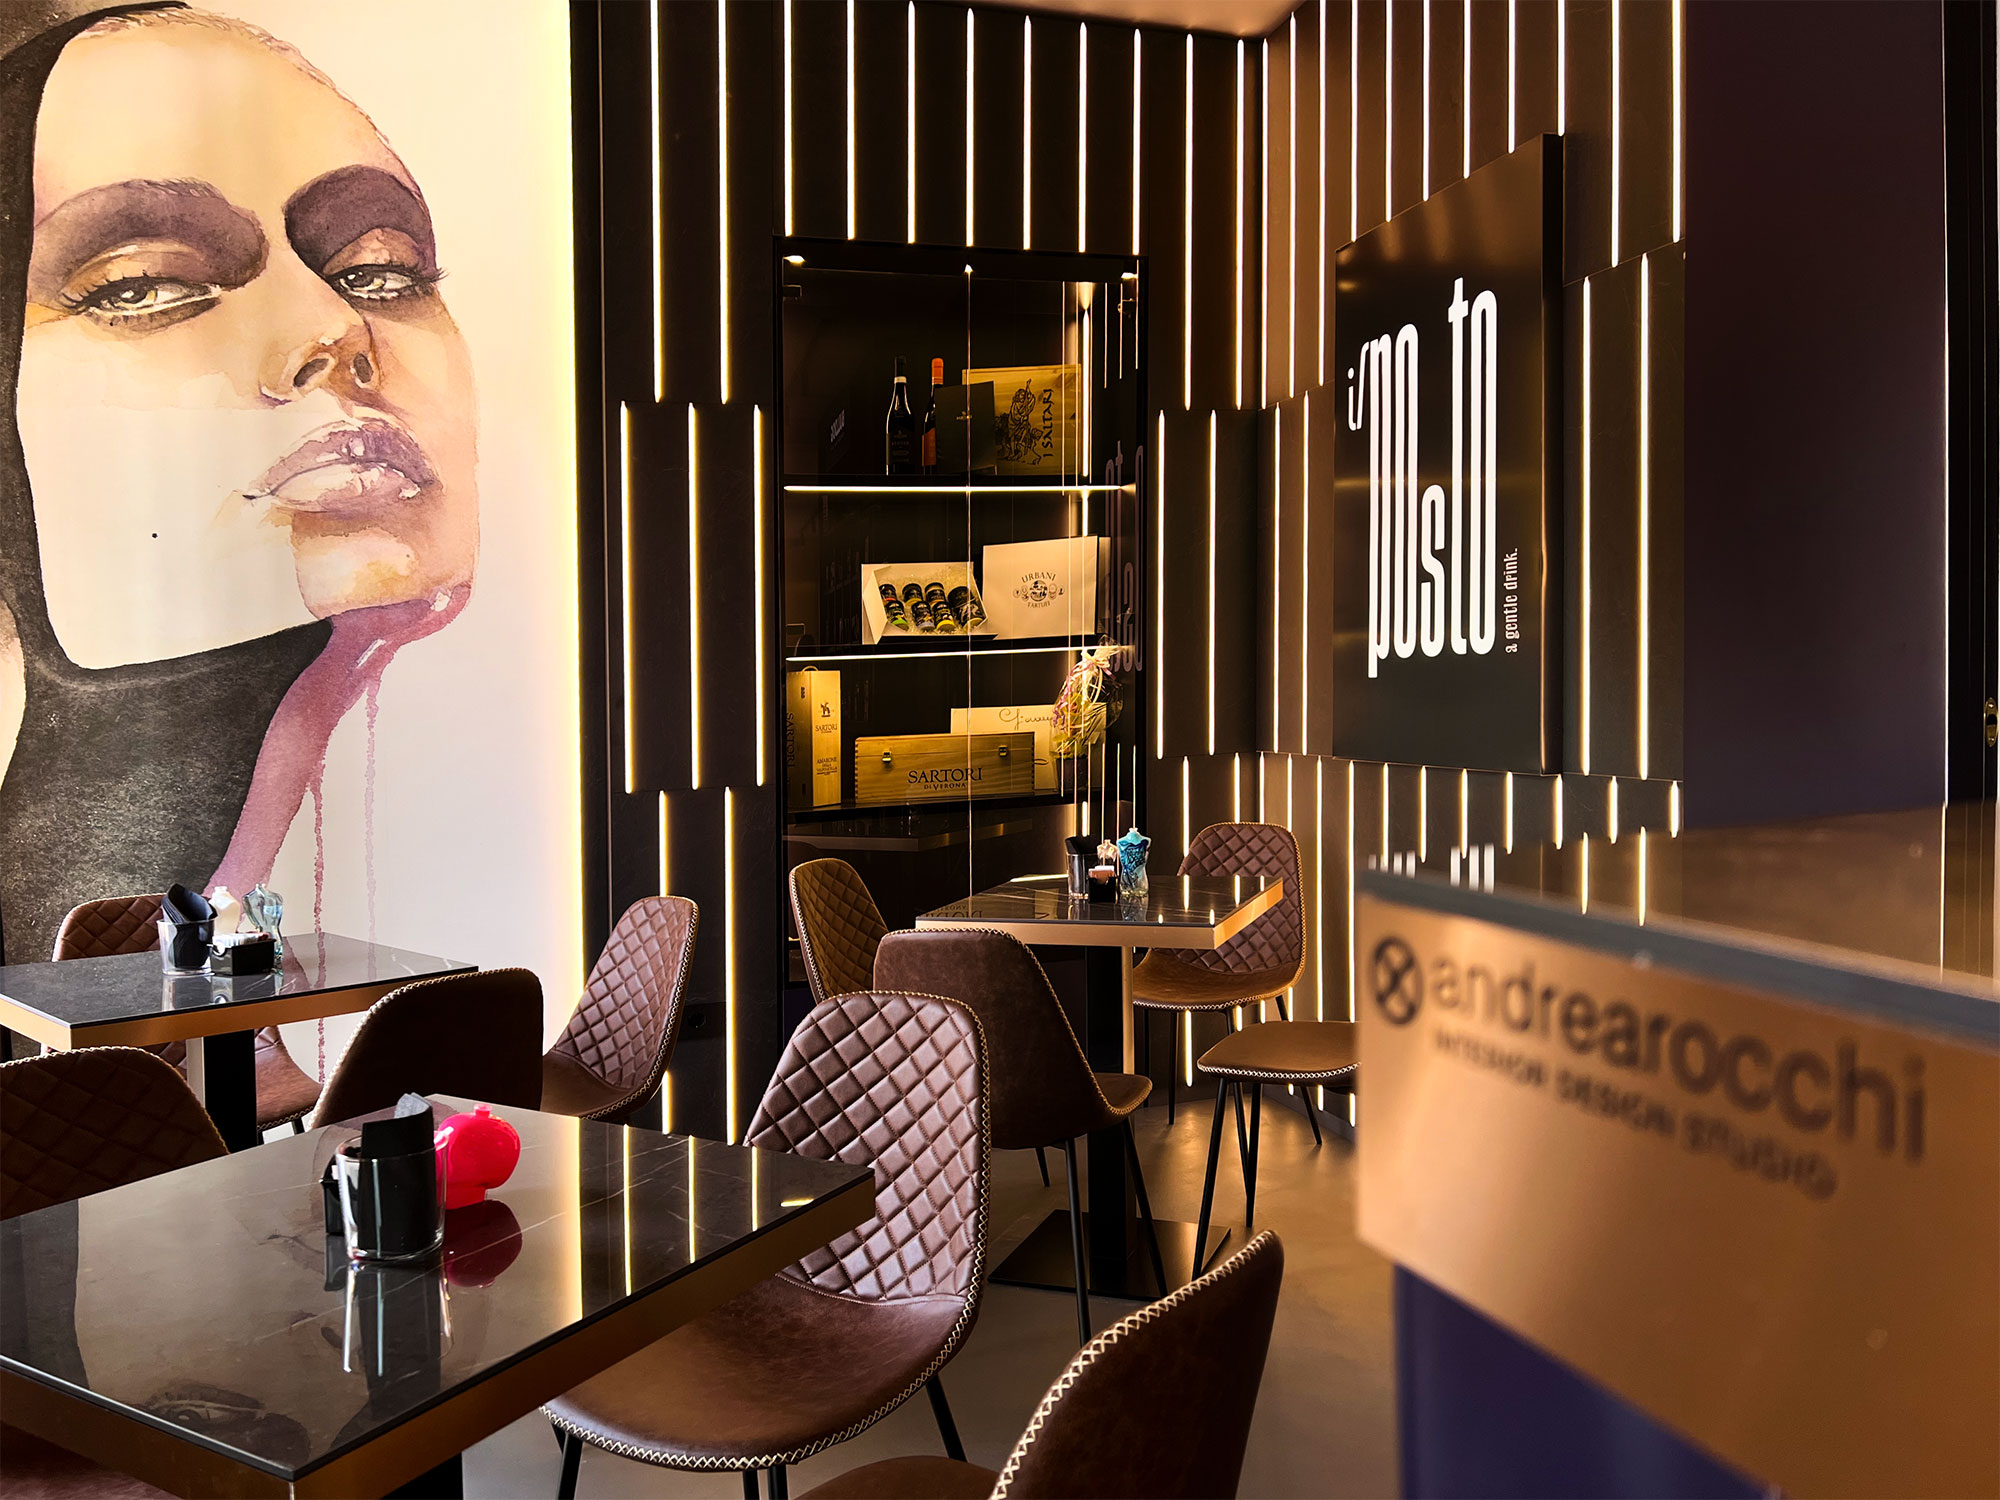 Il posto lounge bar – Progetto von Andrea Rocchi